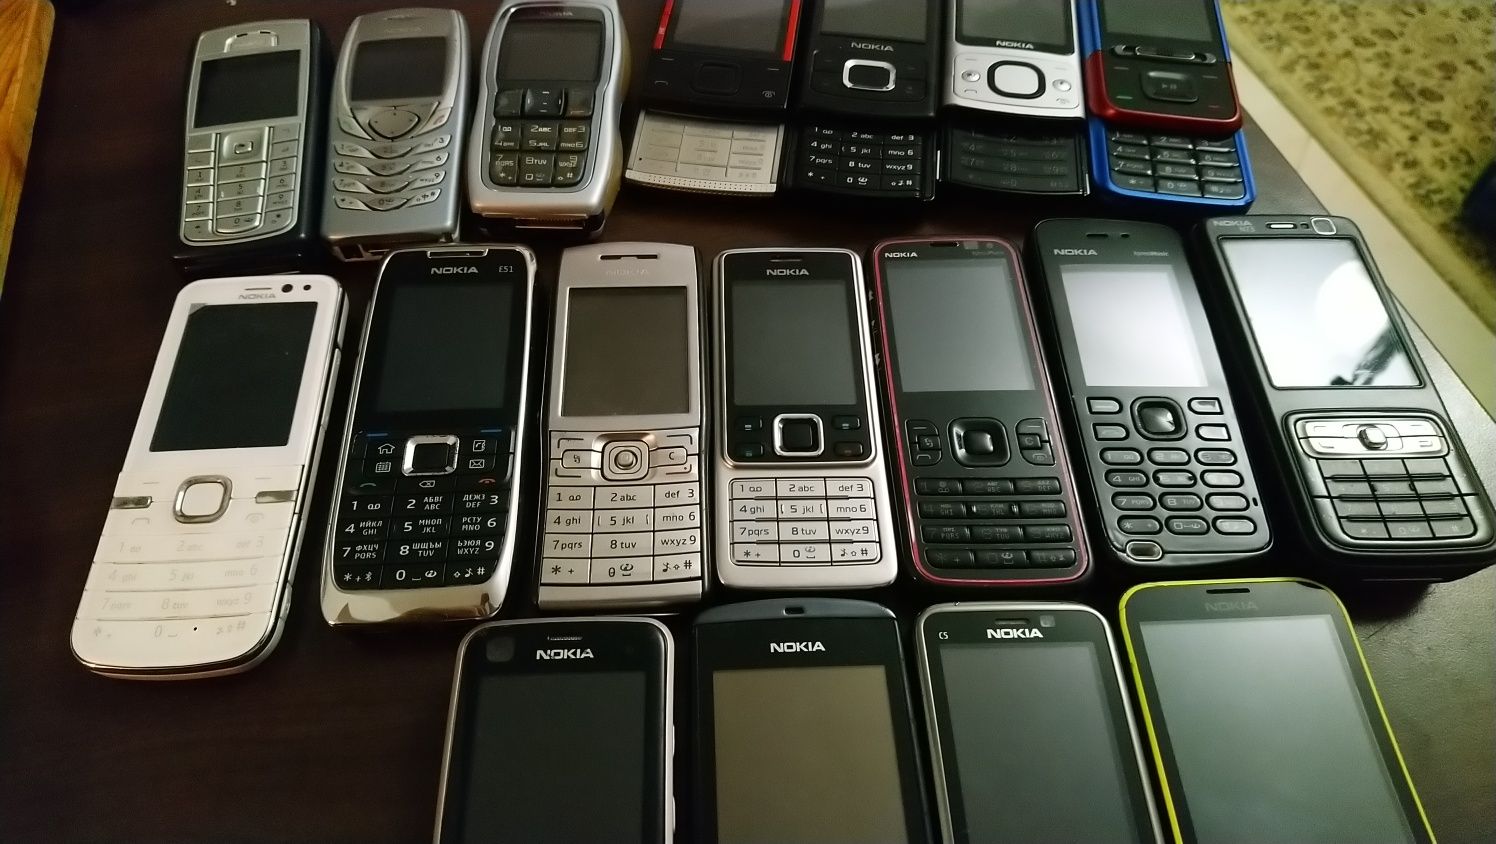 Nokia/Нокия 5220,5630,Е51,Е50,С5,3220,6730,6100,6700,6220,3220,5610,Х3